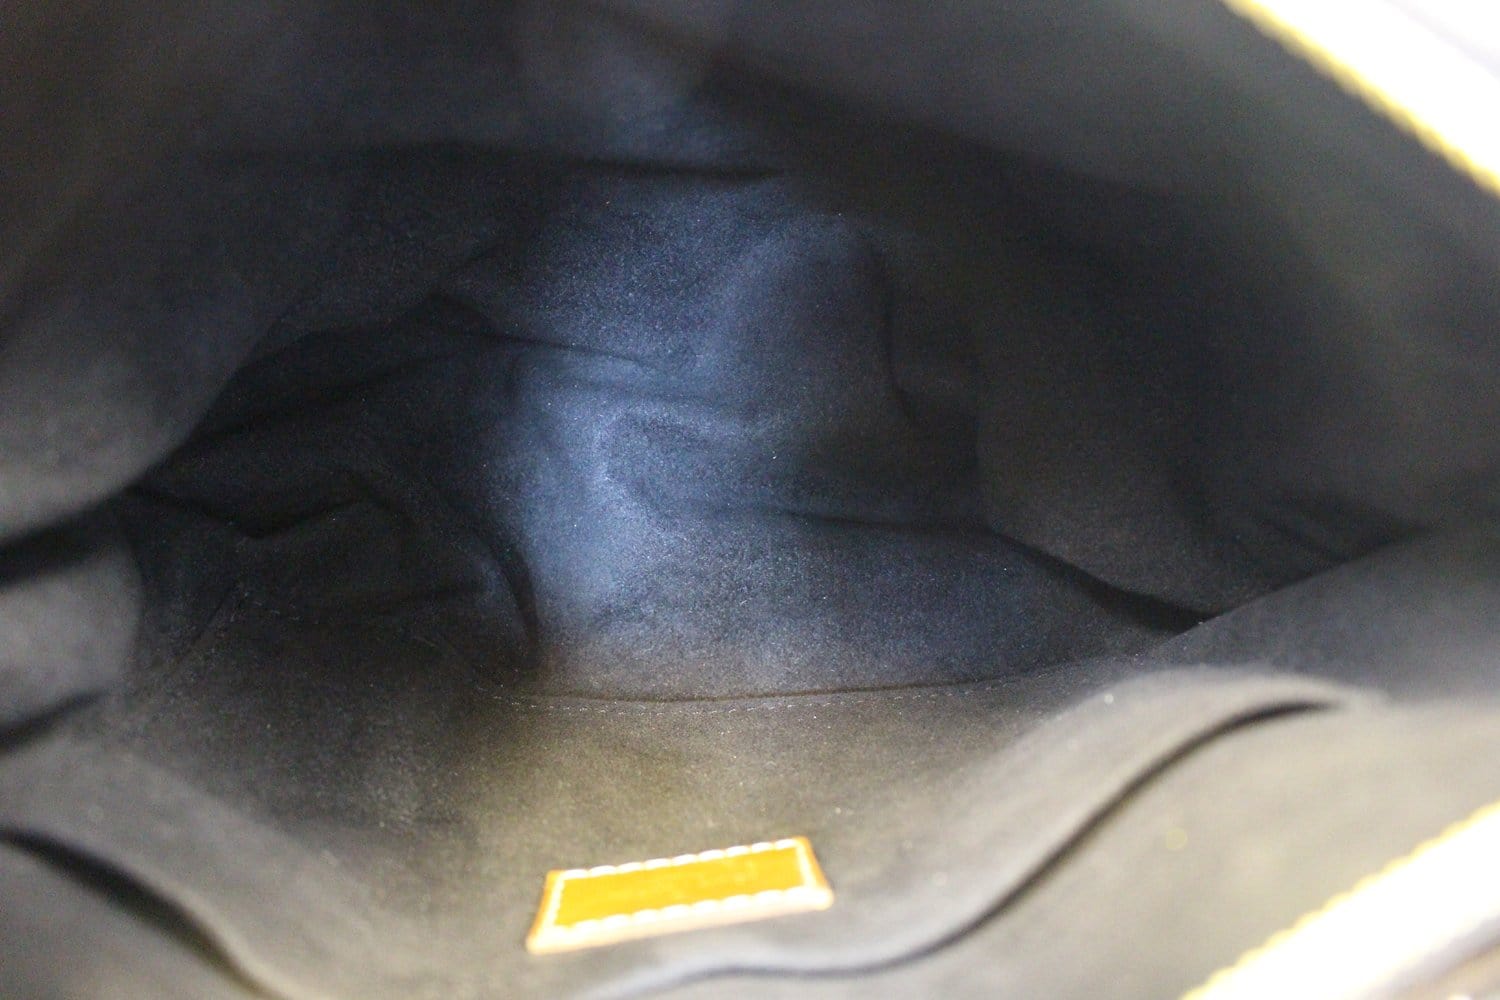 Bag BB Pallas Louis Vuitton Uniform Black Leather ref.522786